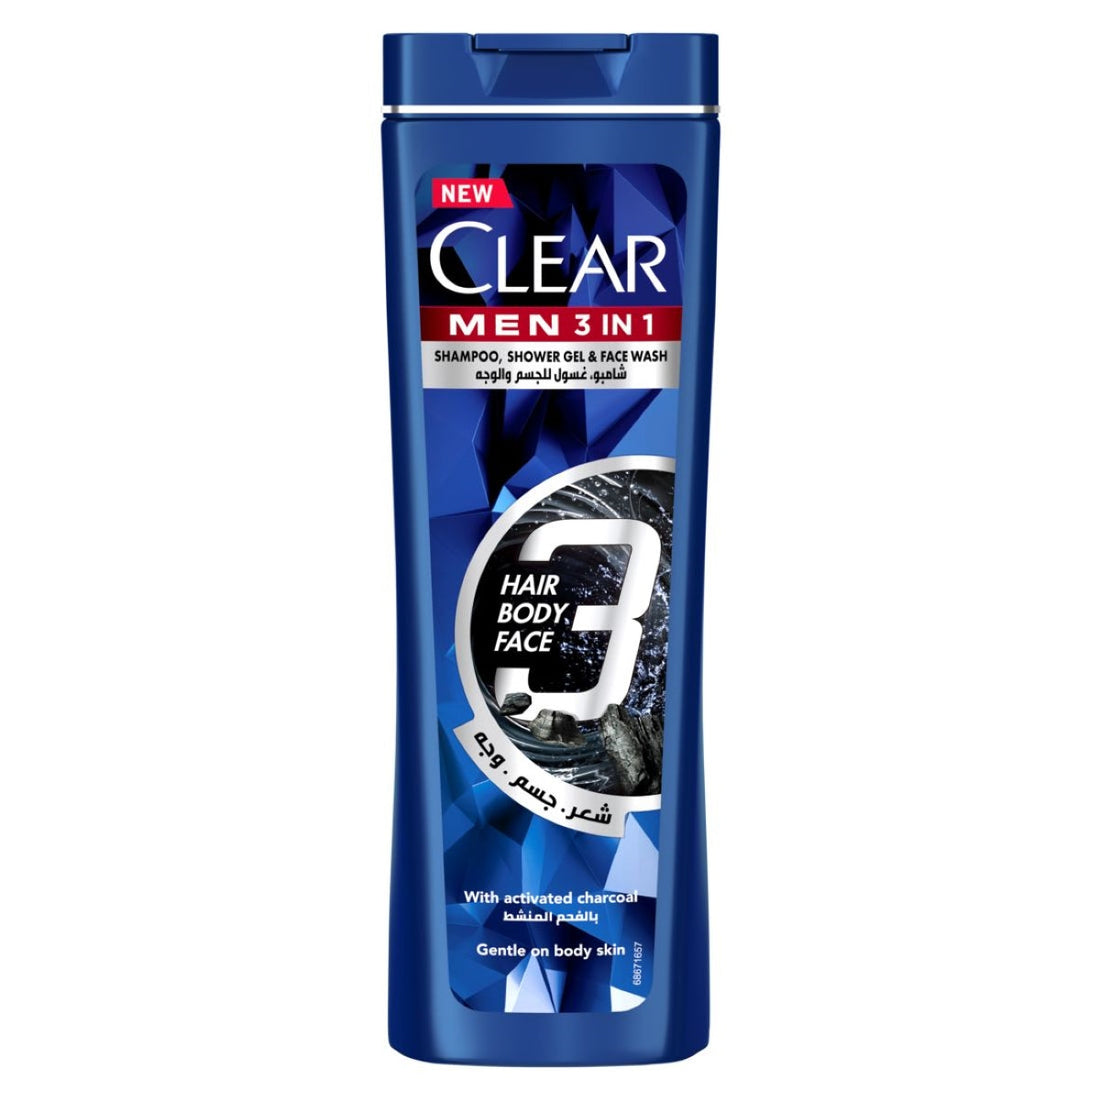 Clear Men 3 in1 Shampoo